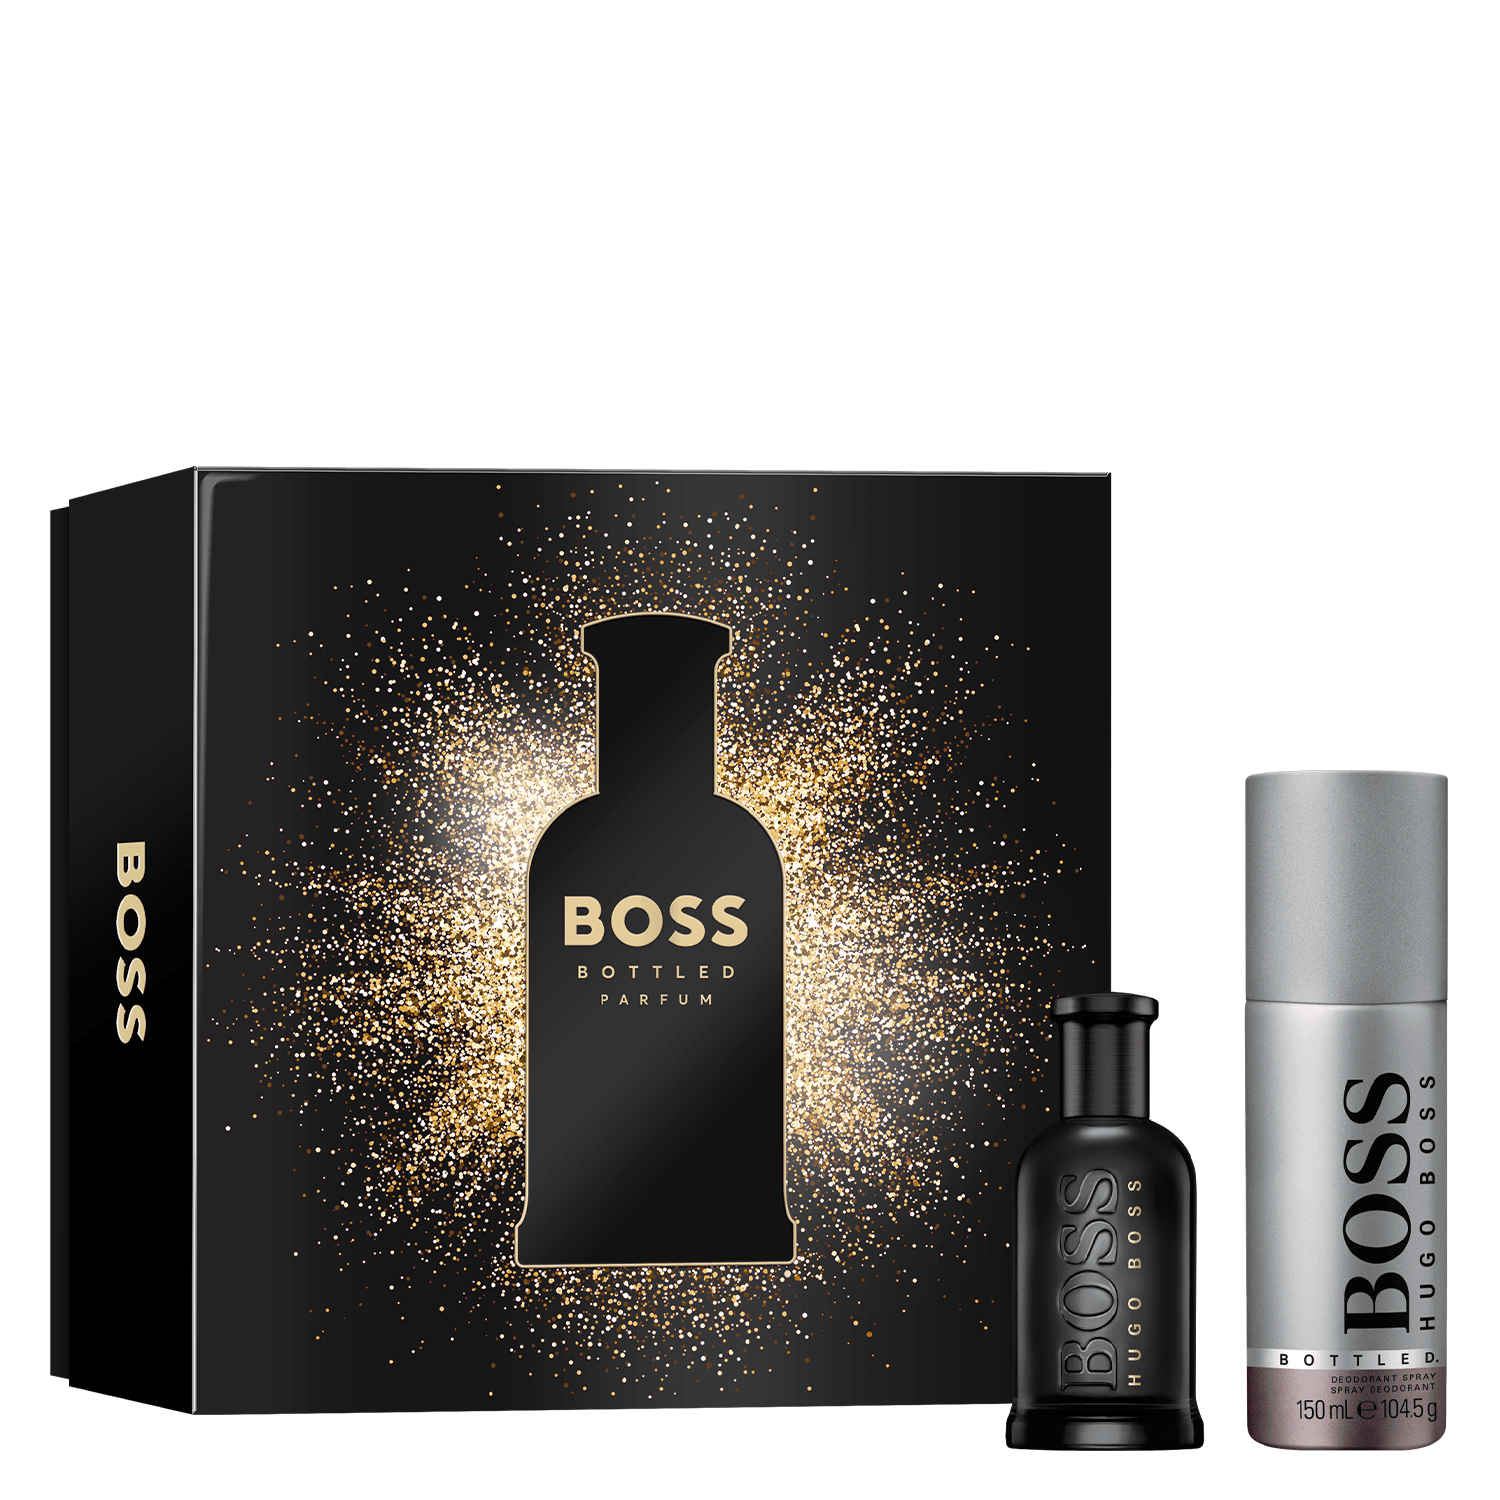 Boss Bottled - Parfum Kit